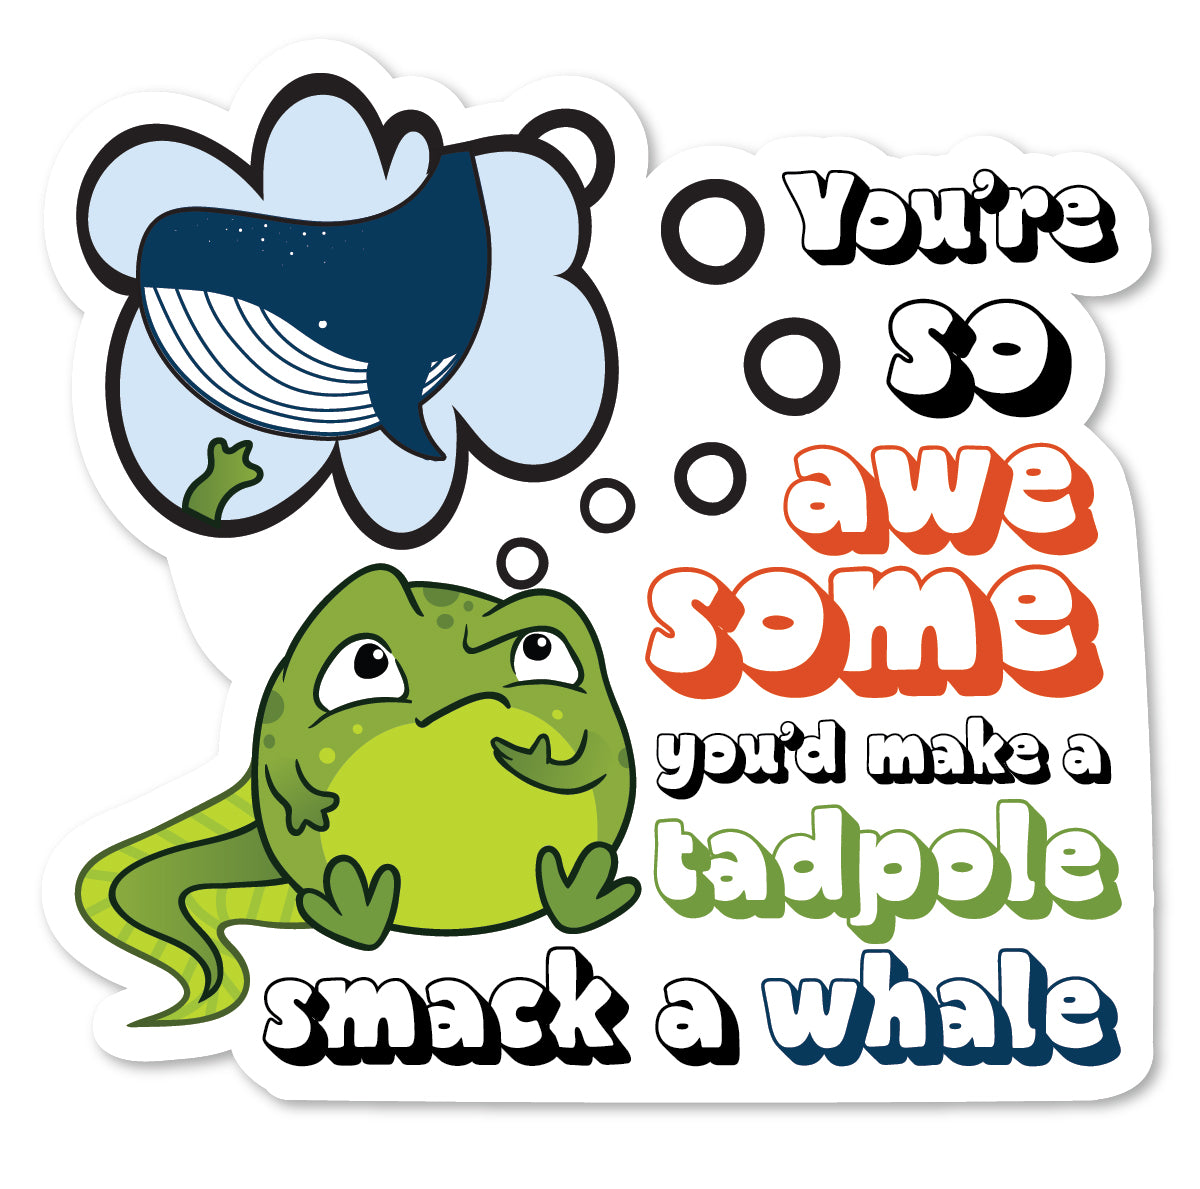 DPP-069 | Awesome Tadpole Smack Whale